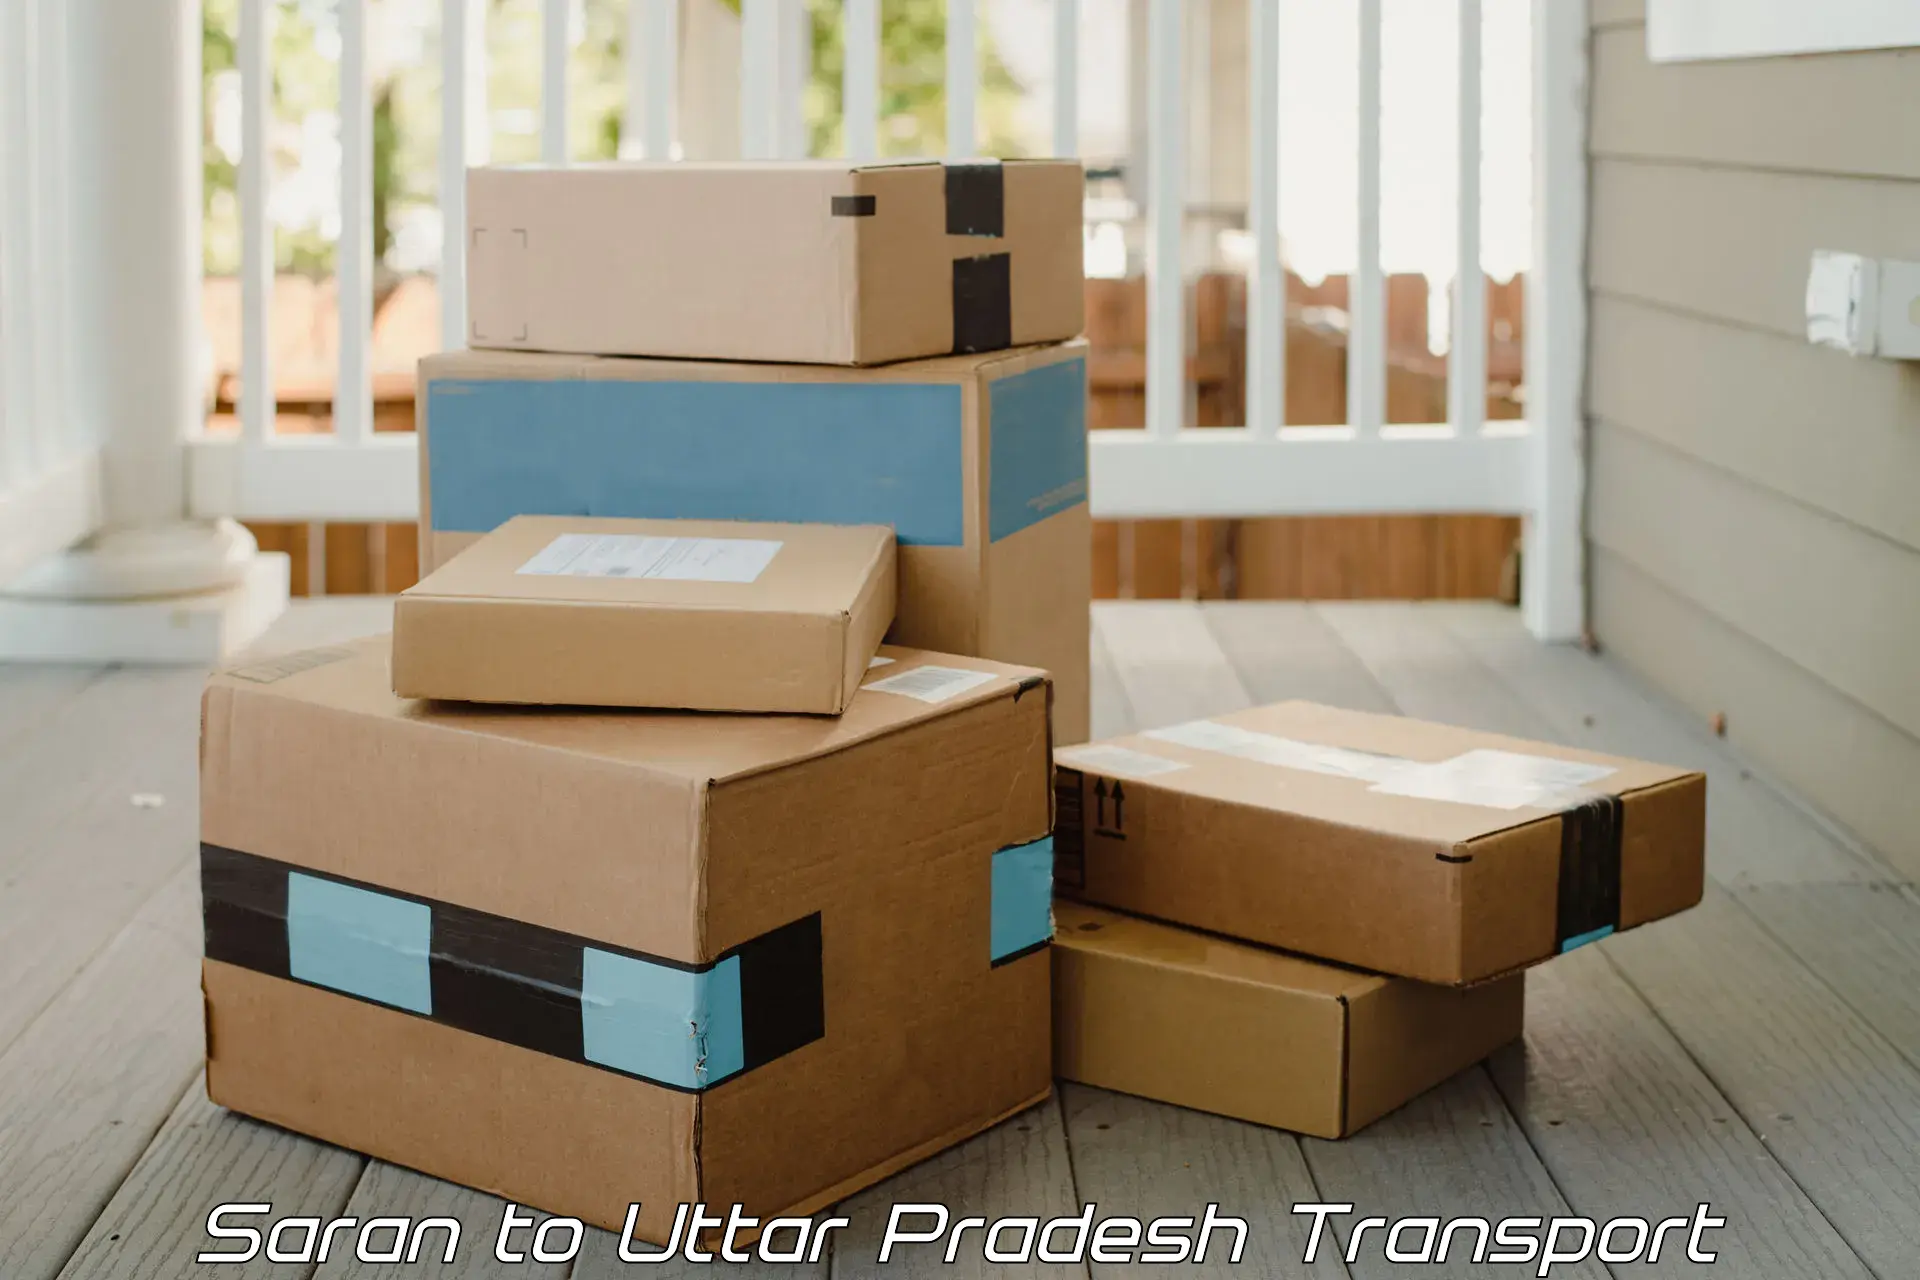 International cargo transportation services Saran to Uttar Pradesh